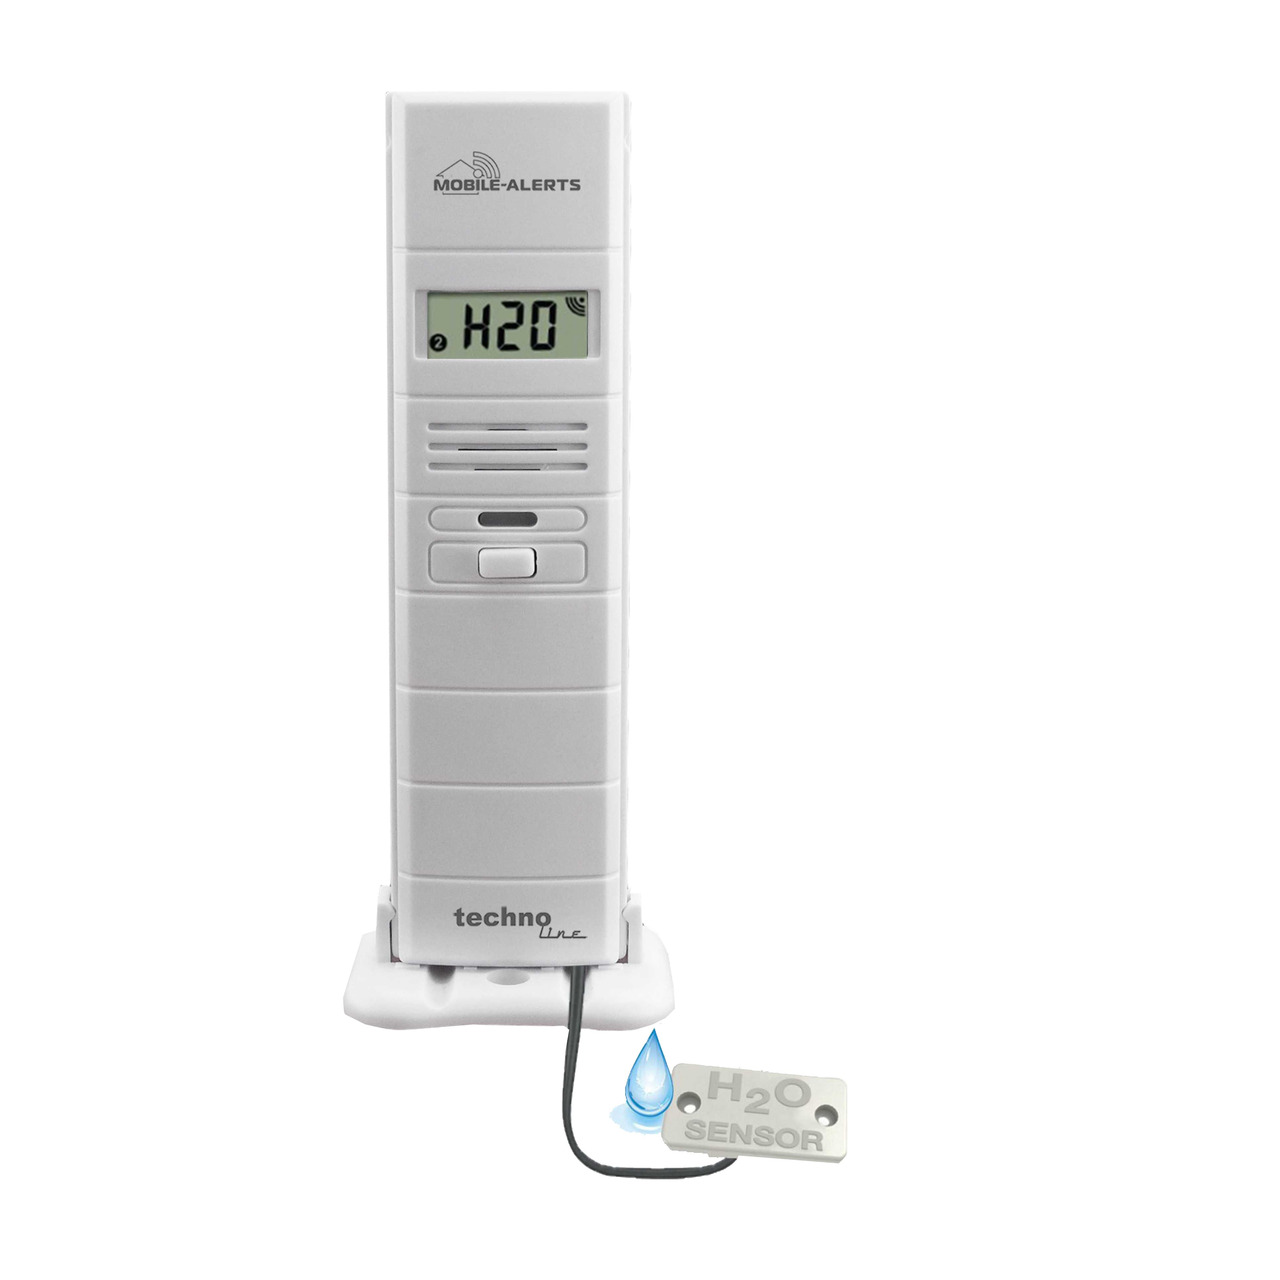 Mobile Alerts Thermo-Hygrosensor MA10350 mit zusätzlichem Wasserdetektor unter Klima - Wetter - Umwelt